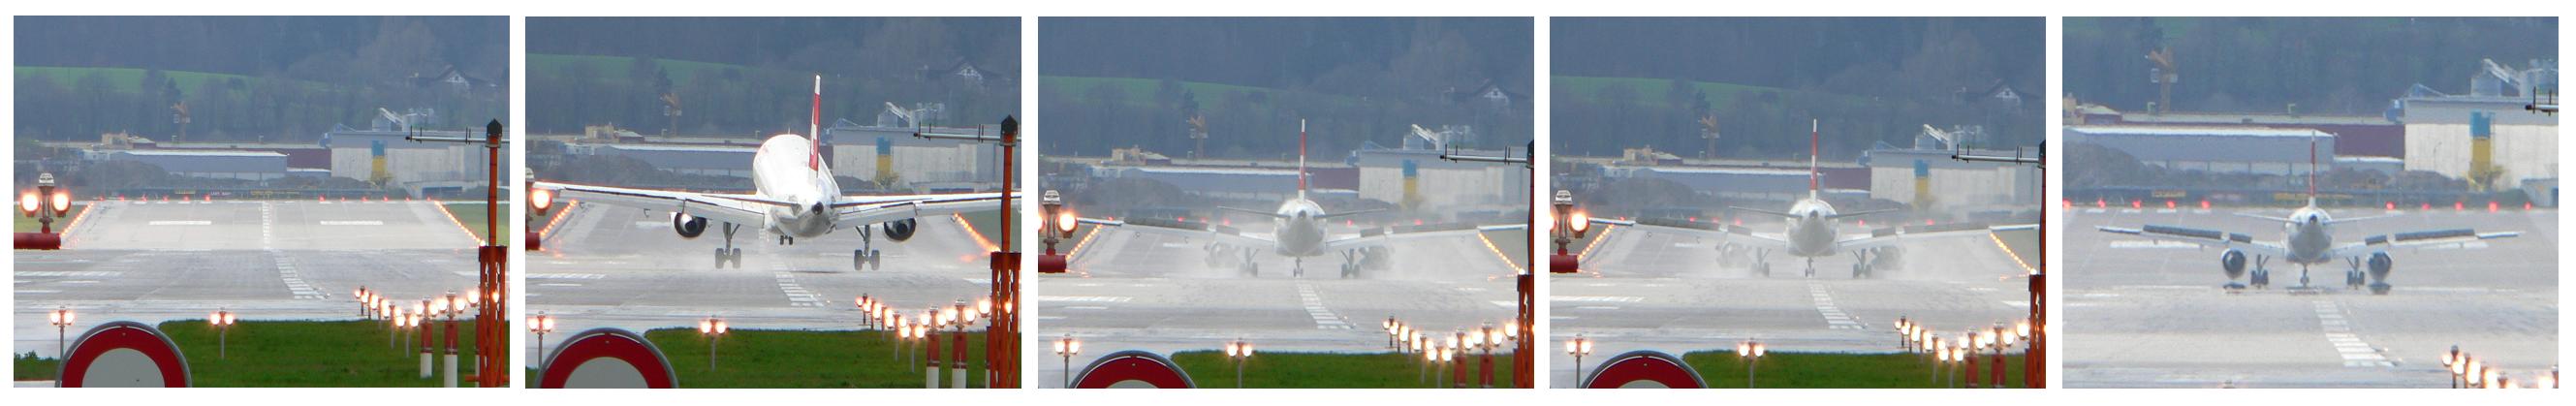 Landung am Flughafen Zürich